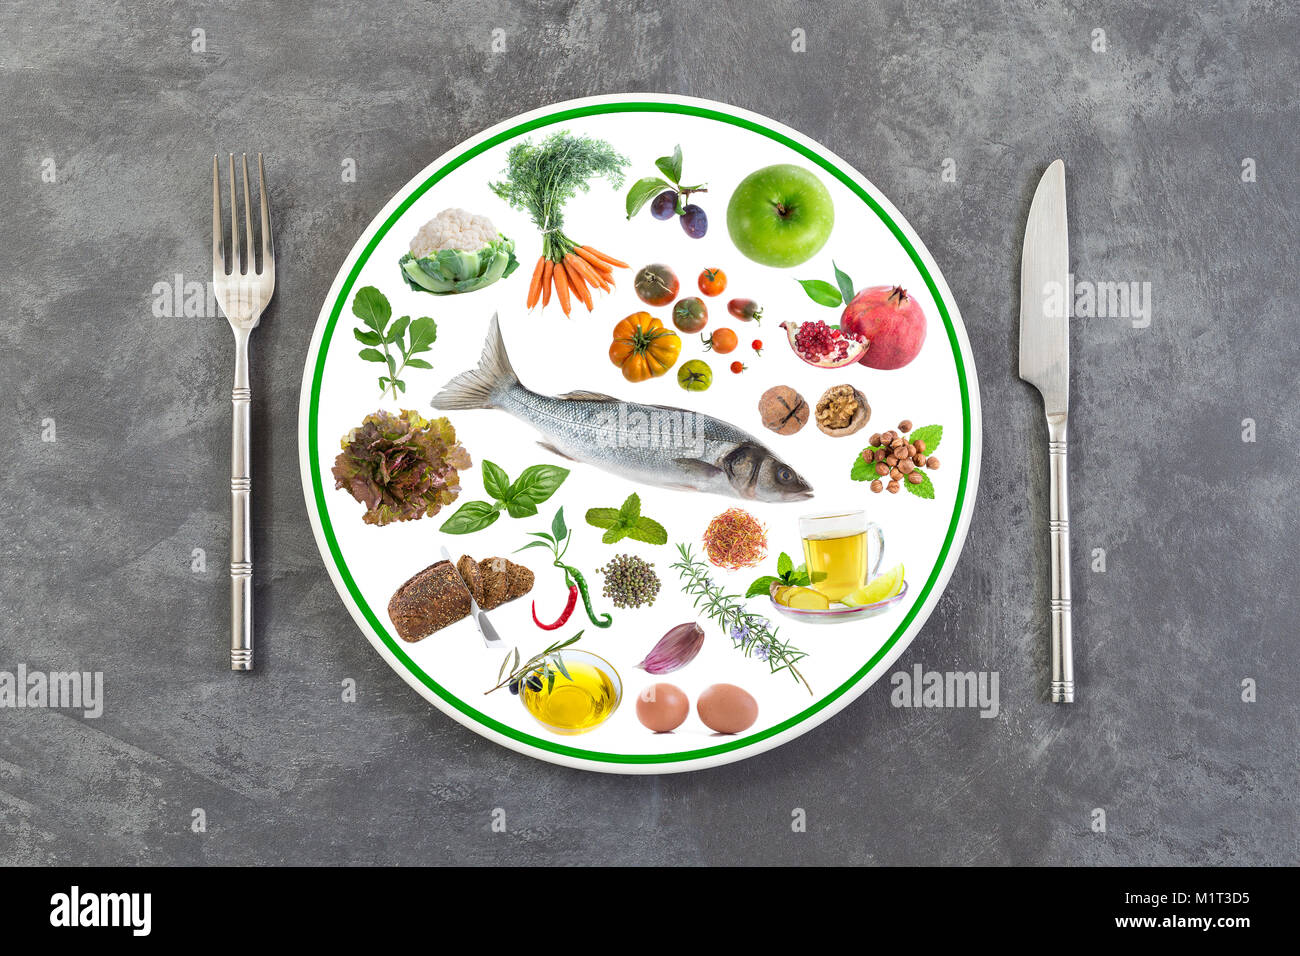 Concept de la bonne nourriture, dans une assiette, de l'alimentation, nutrition, équilibre sur un fond gris ardoise Banque D'Images